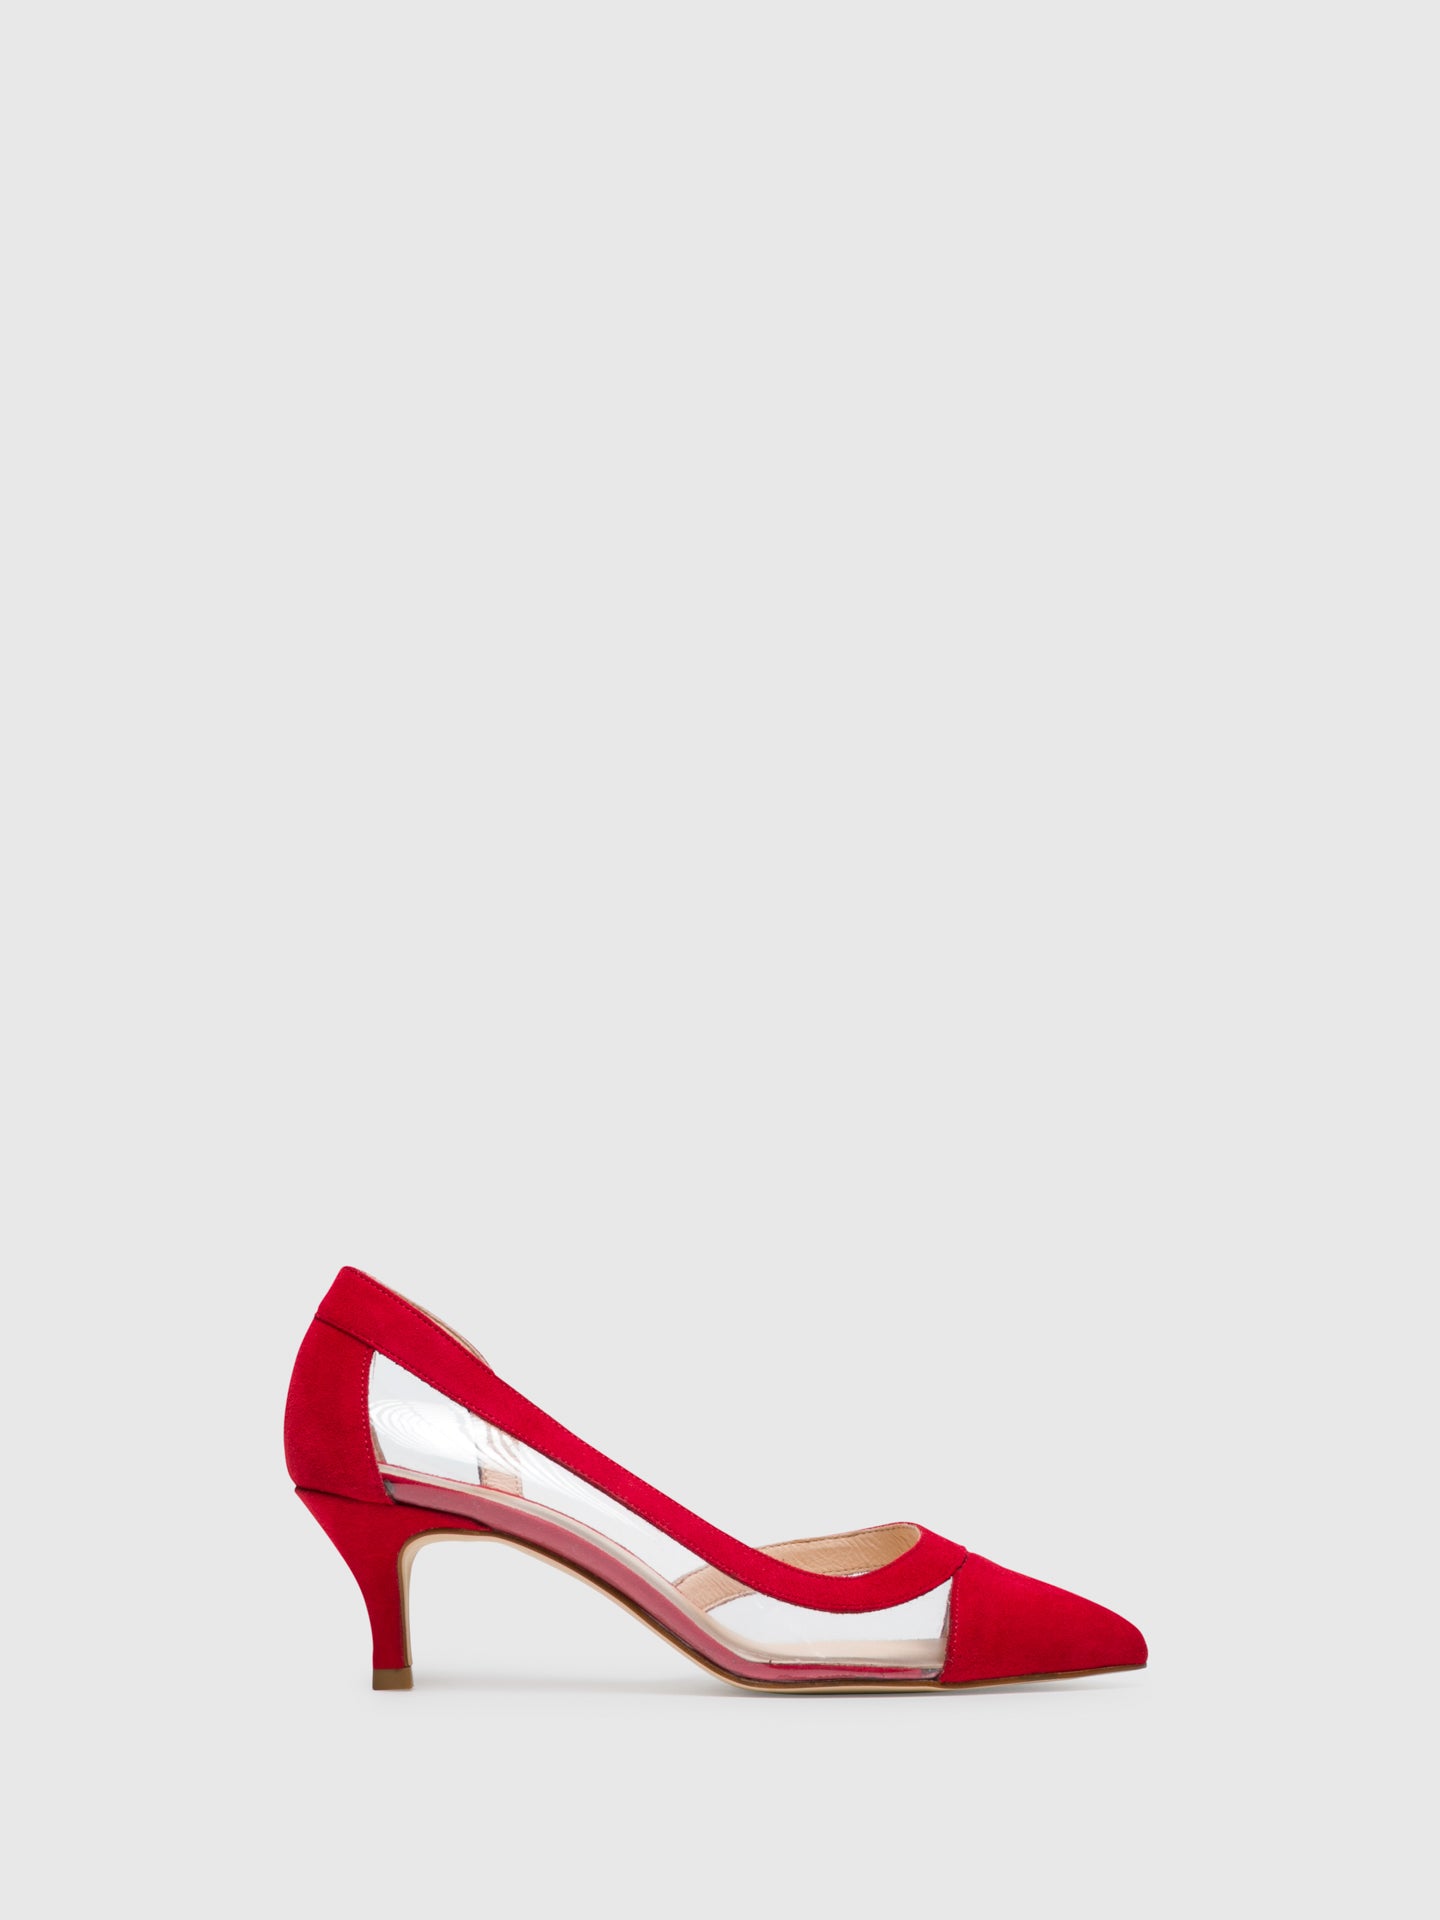 Sofia Costa Red Stilettos Shoes